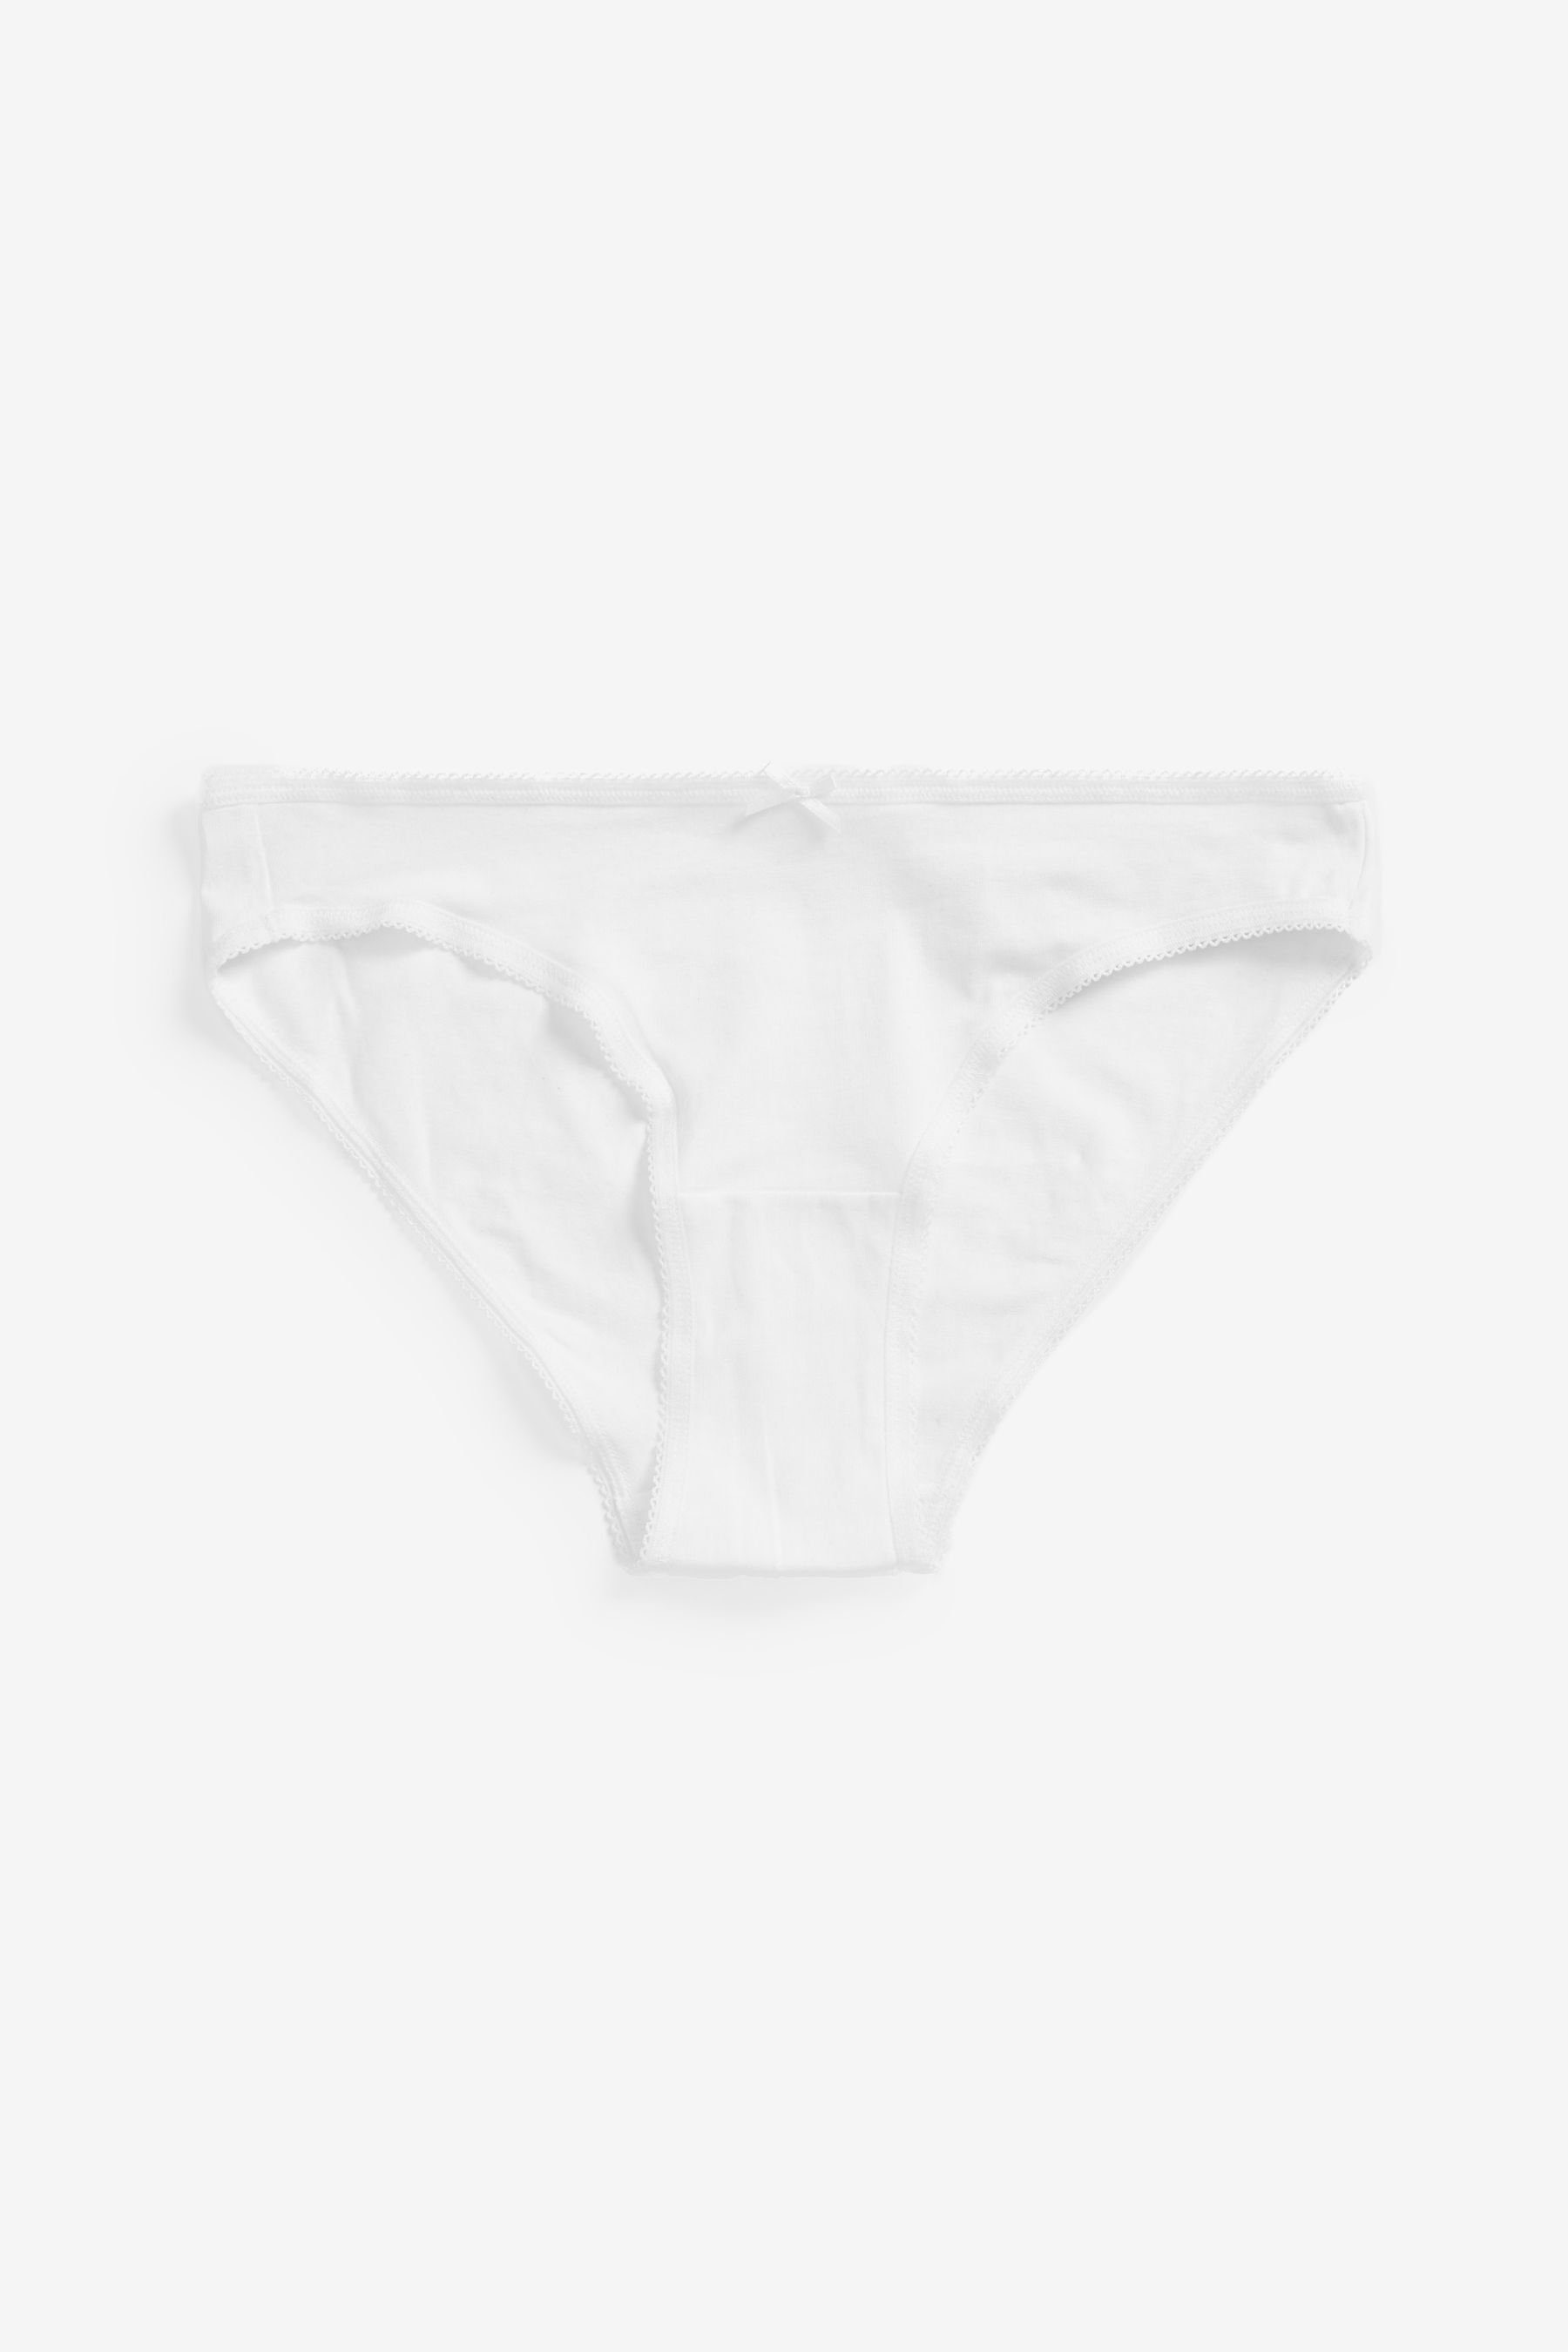 Black/White/Nougat aus Next Bikini-Slips 6er-Pack Bikinislip (6-St) Baumwollmix